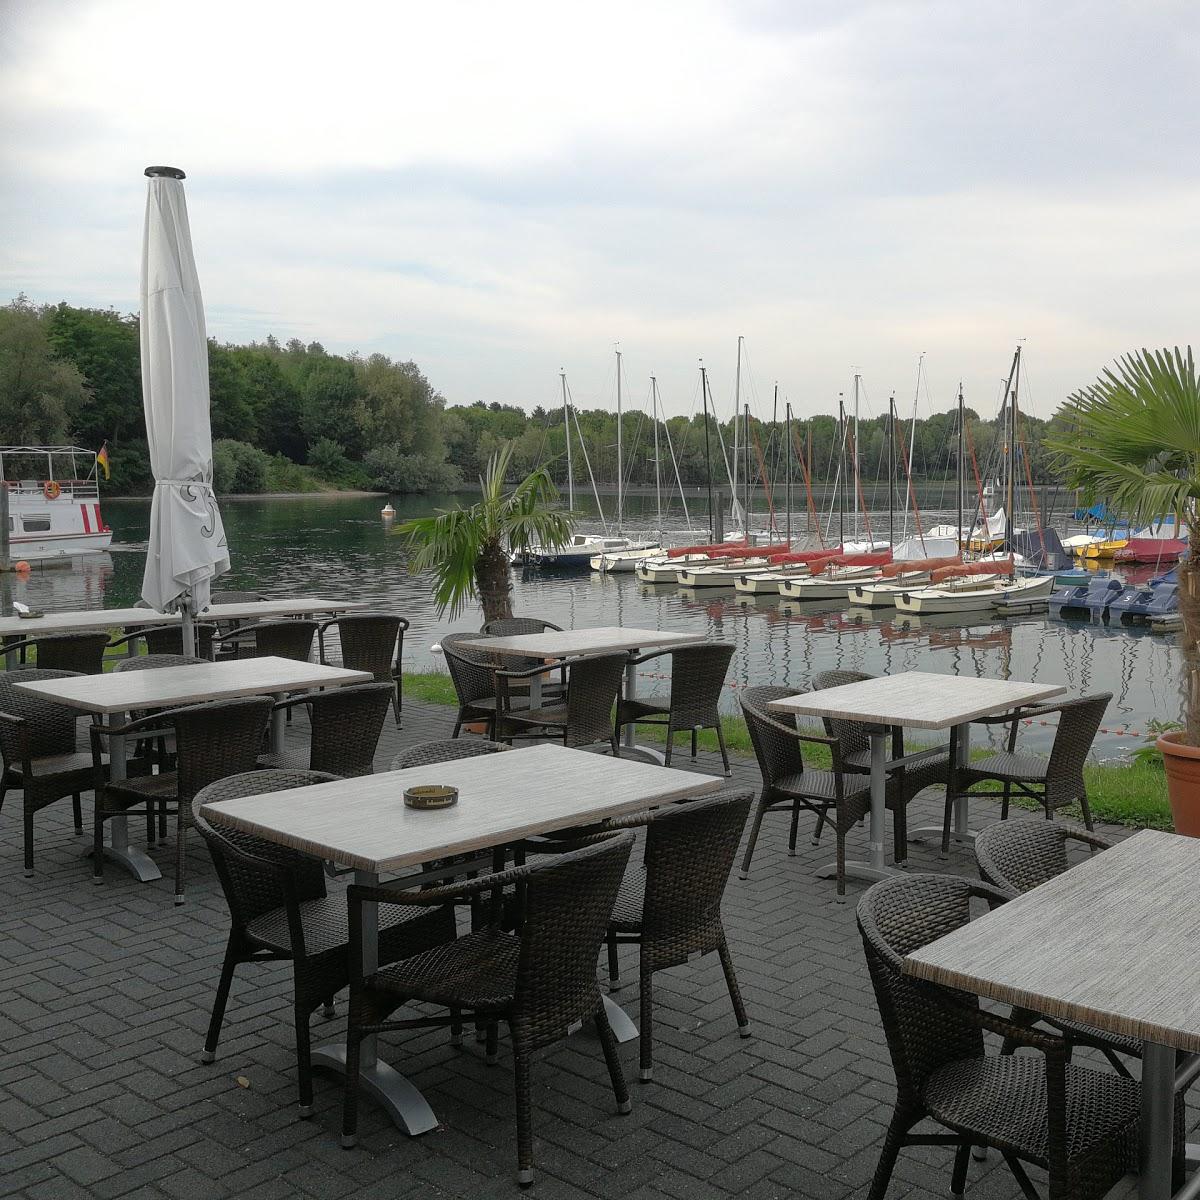 Restaurant "Bistro  Pier5 " in Xanten